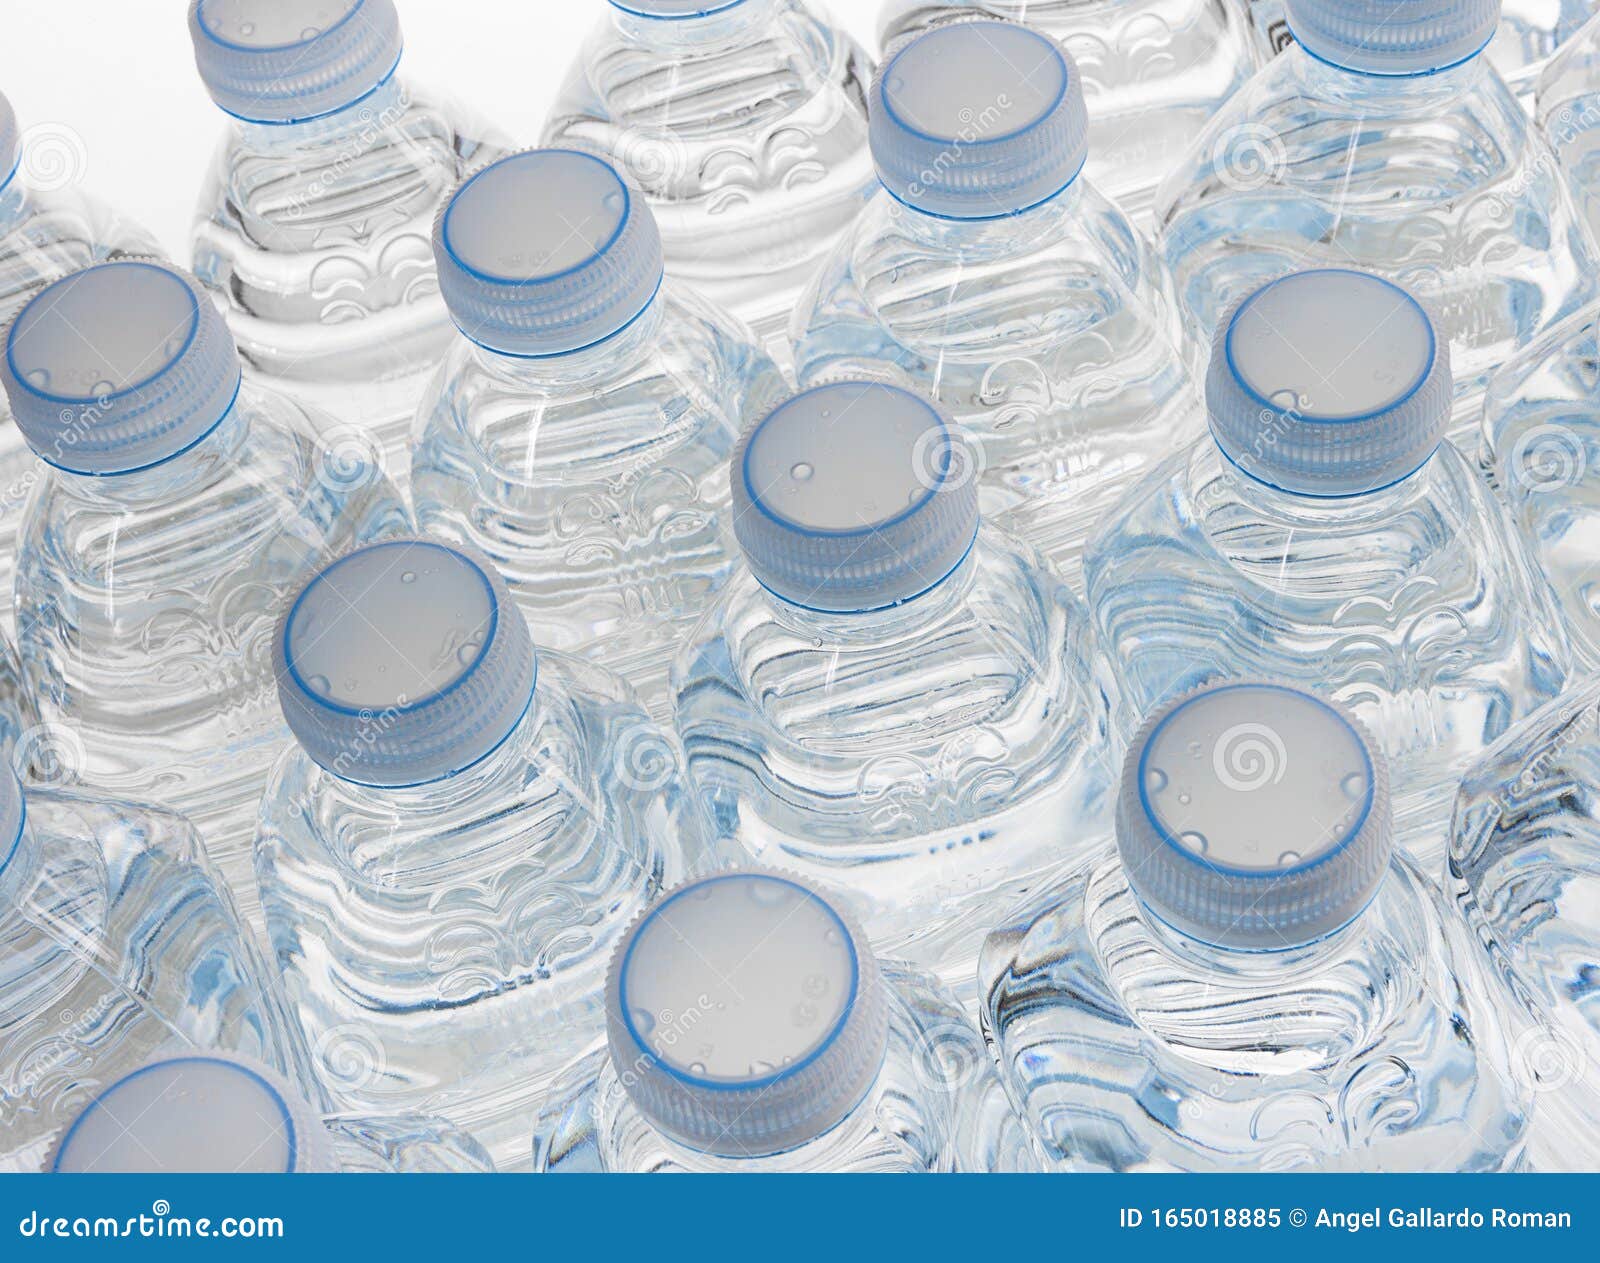 botellas plÃÂ¡stico de agua en fondo blanco